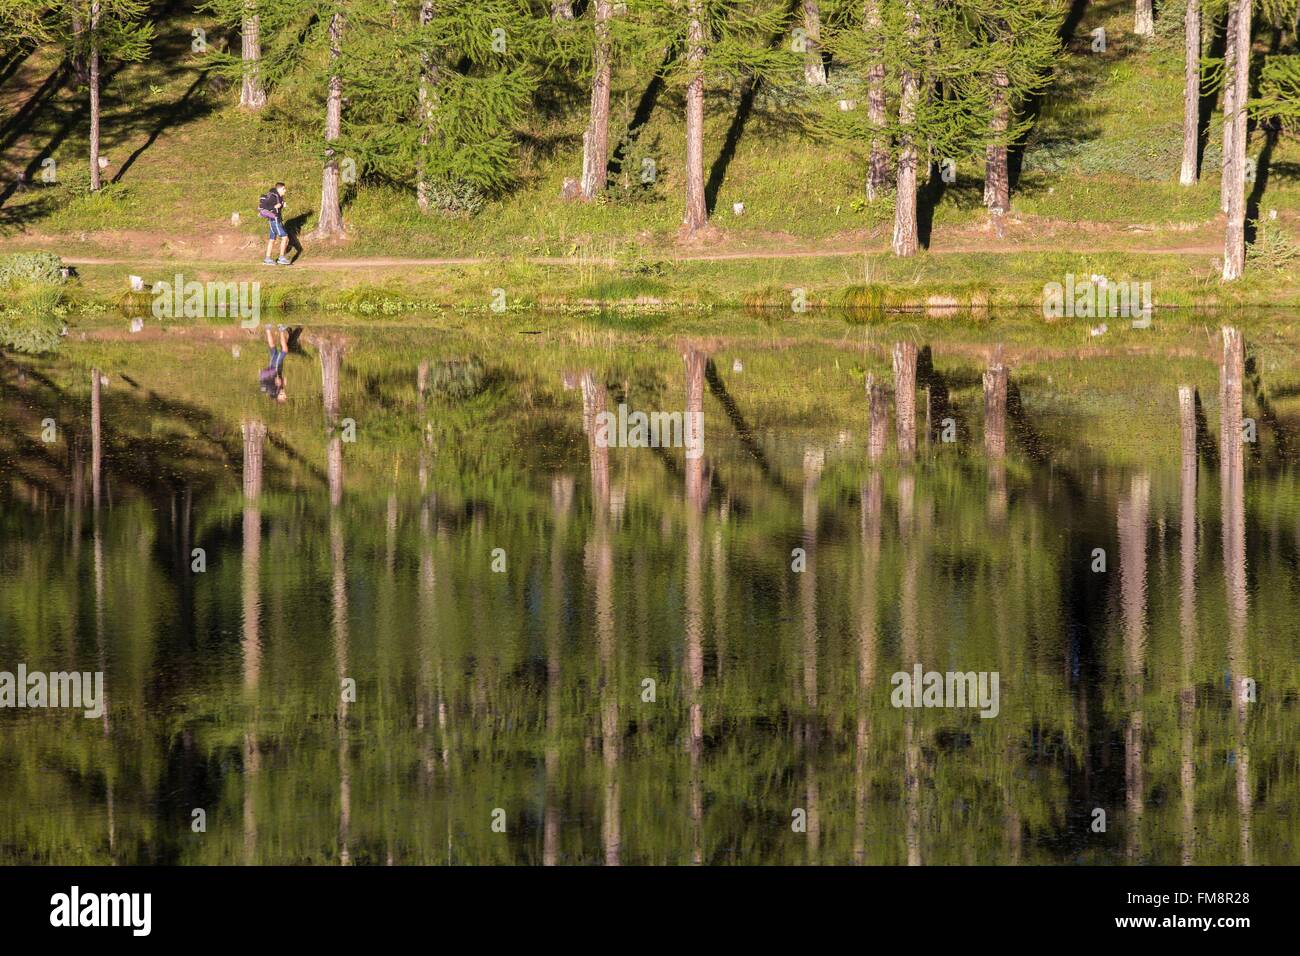 France, Hautes Alpes, Parc Naturel Régional du Queyras (Parc Naturel Régional du Queyras), forêt de mélèze (Larix decidua) sur le lac de roue (1854m) Banque D'Images